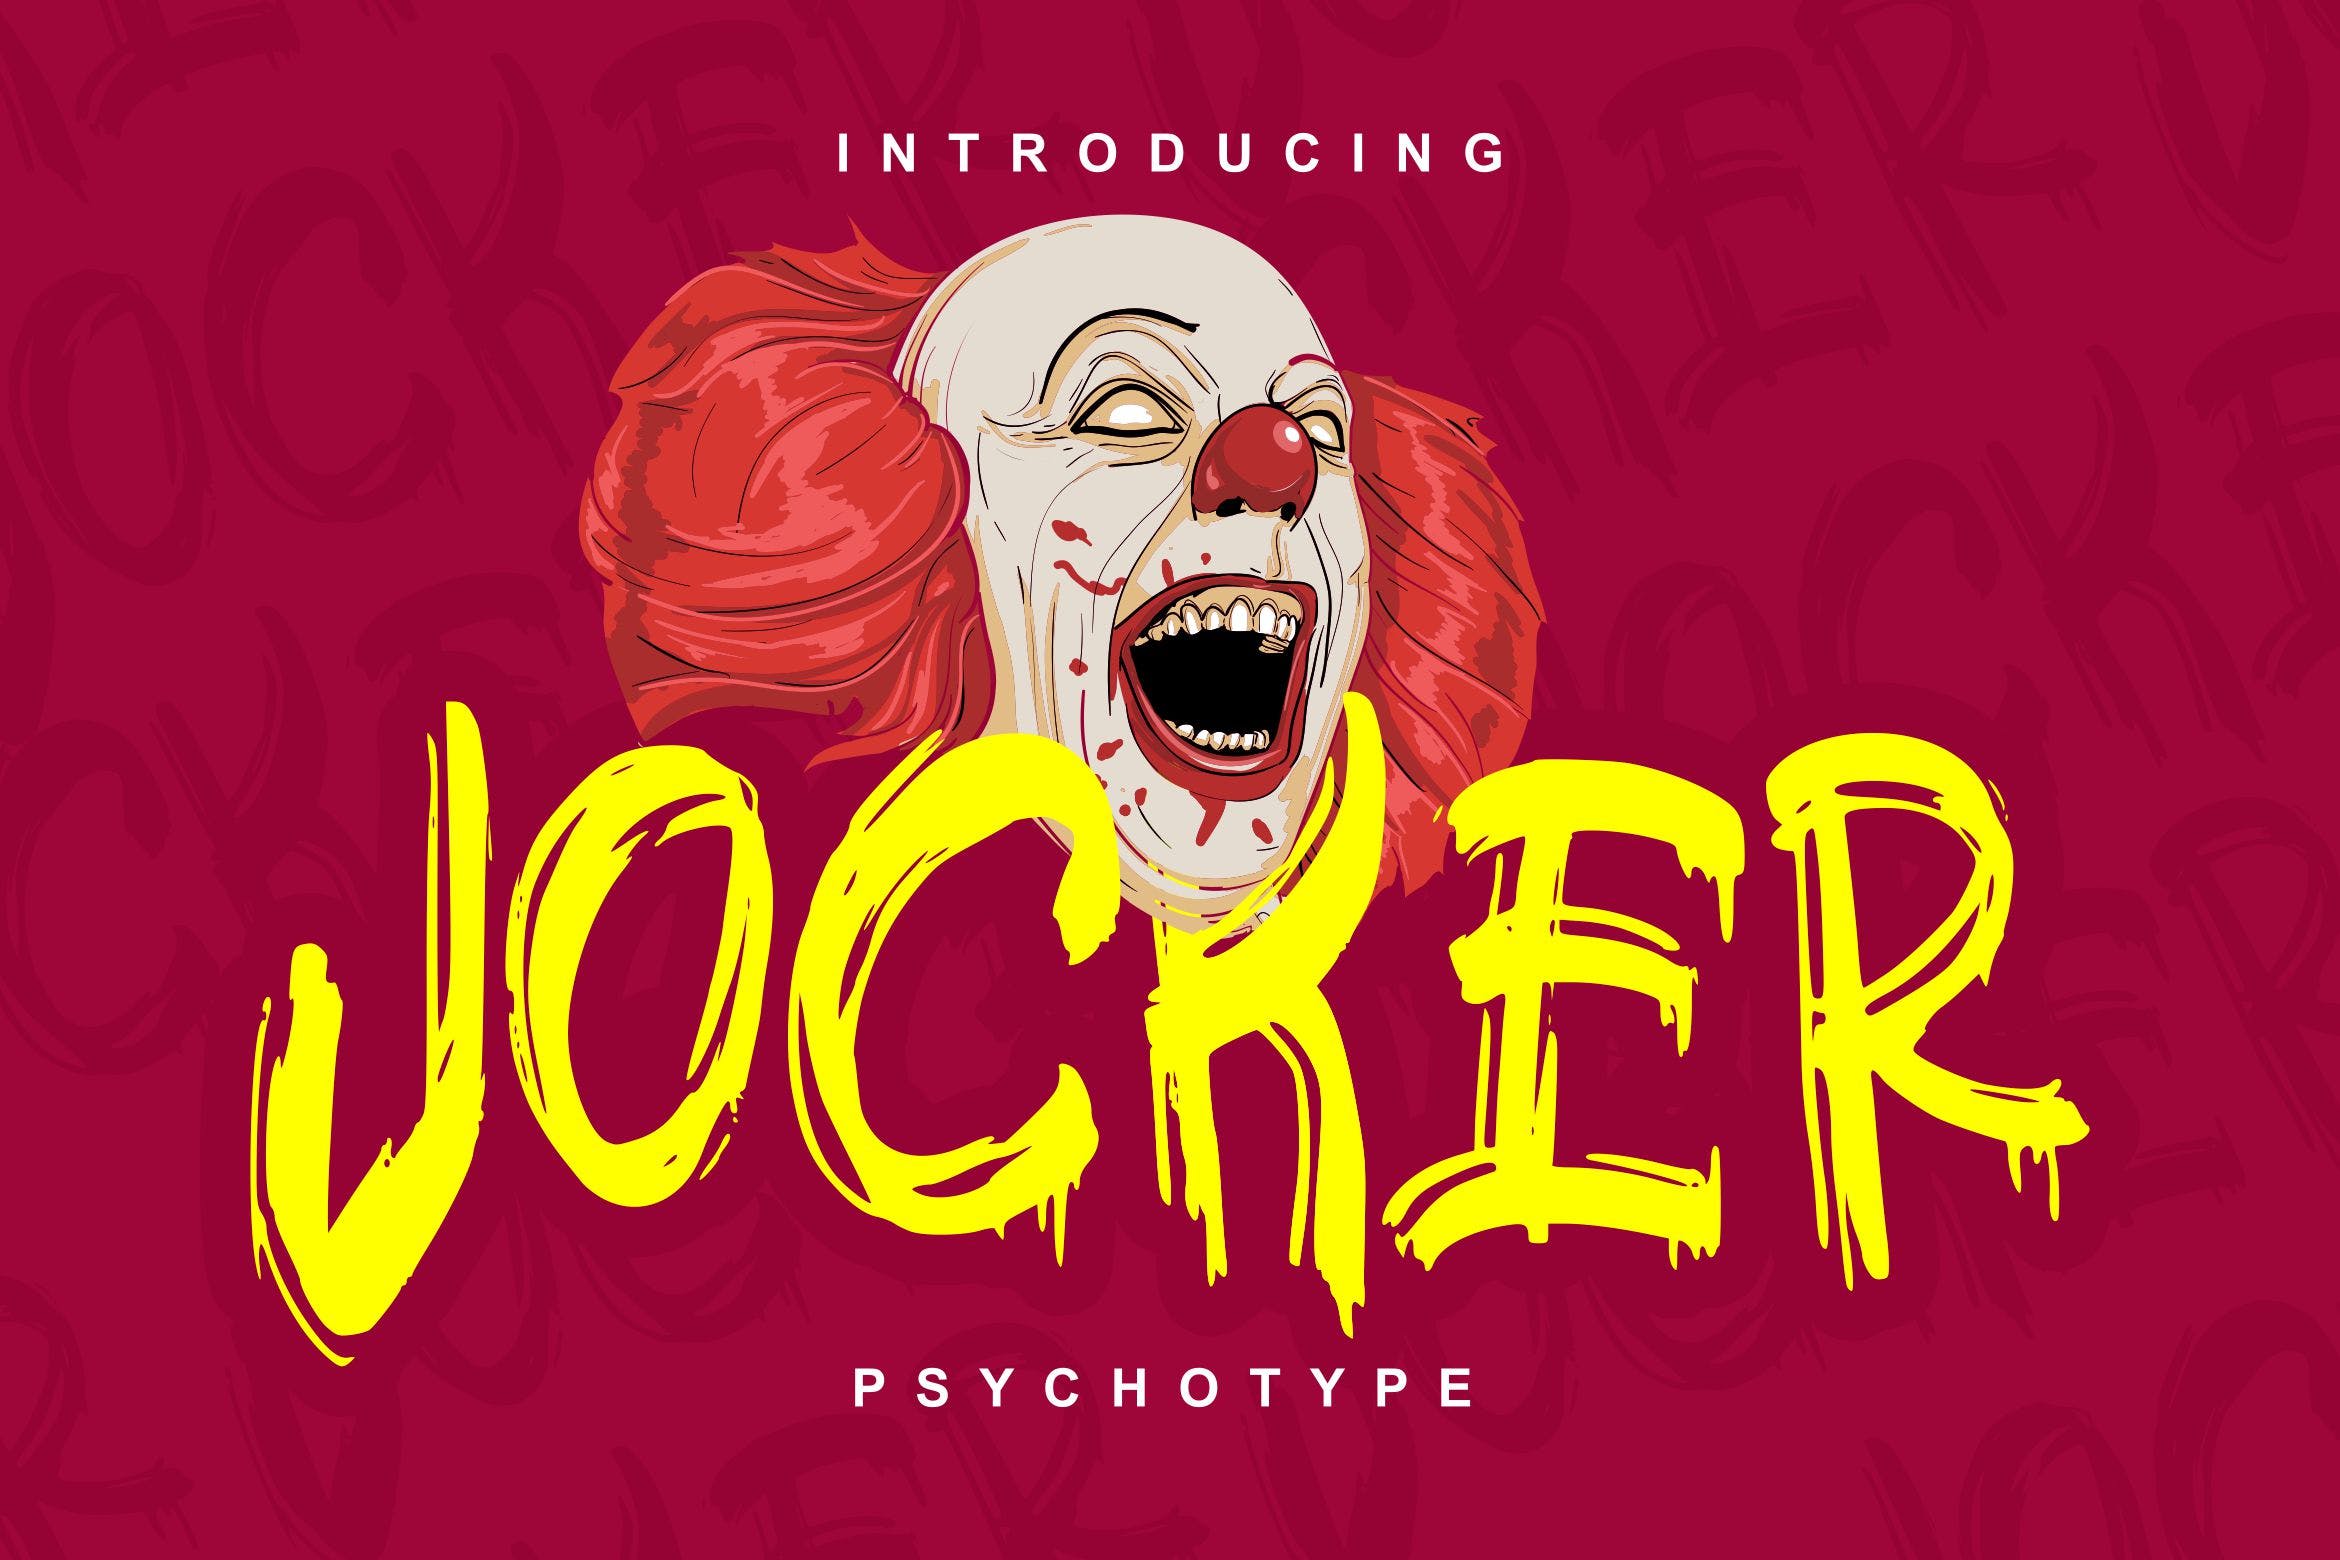 极具个性的英文笔刷装饰字体蚂蚁素材精选 Jocker | Psychotype Font Theme插图